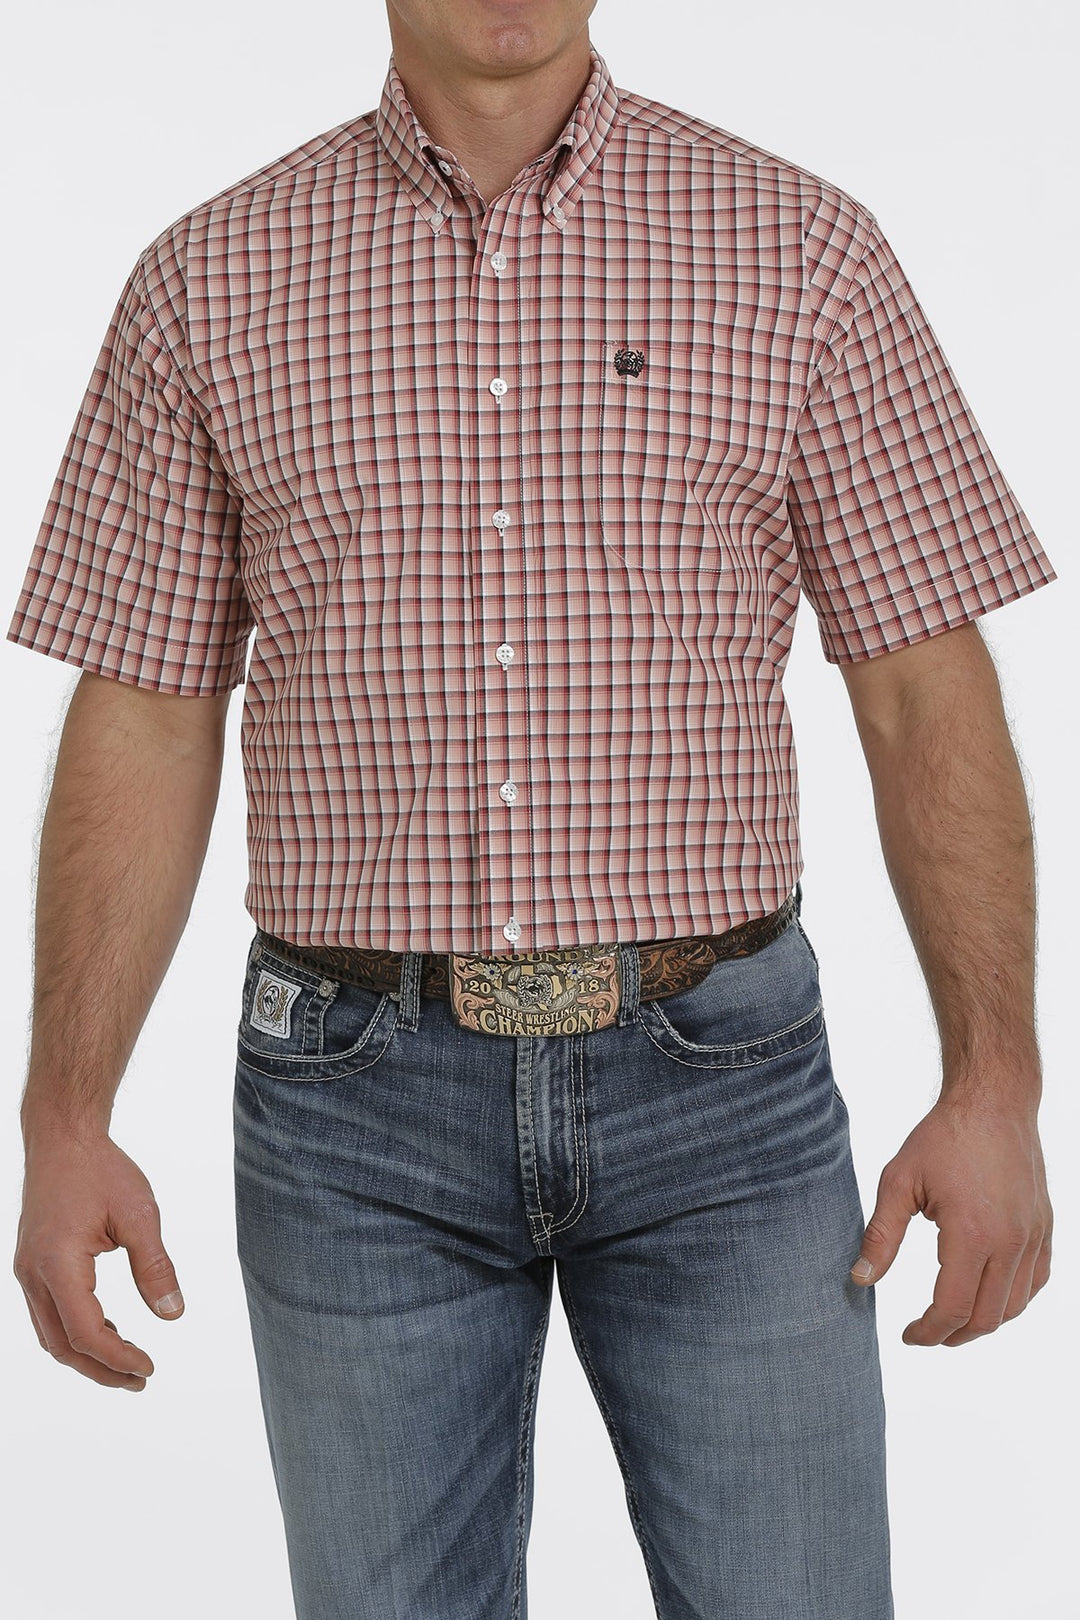 Chemise western à manches courtes à carreaux Cinch pour hommes - MTW1111392